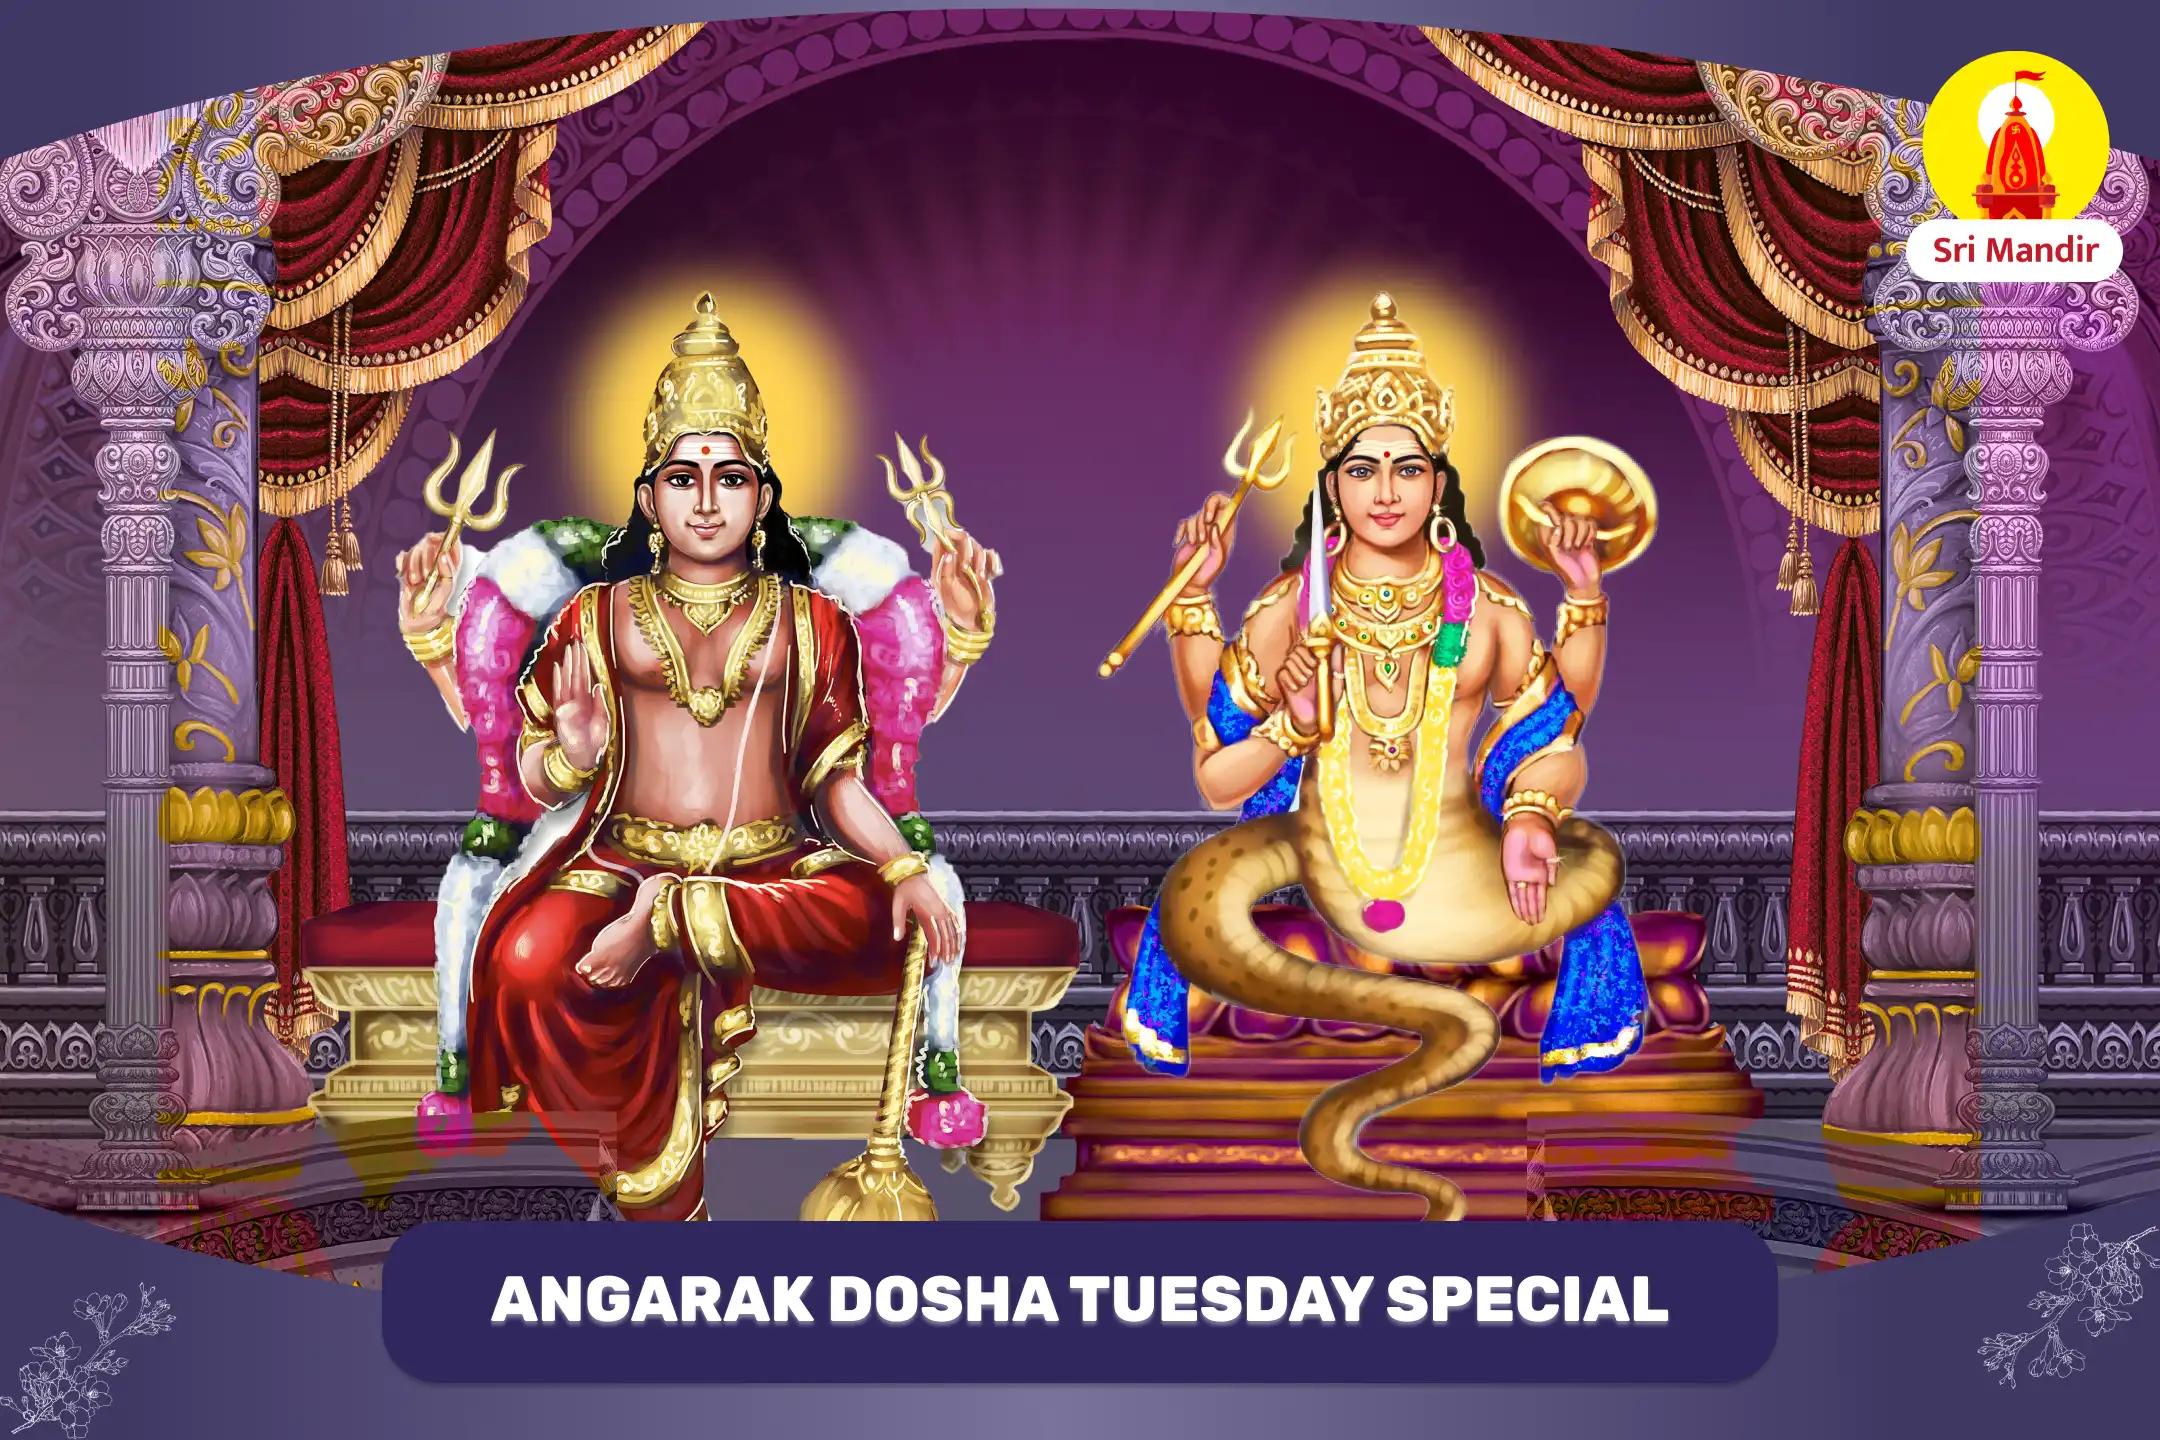 Mangal Rahu Angarak Dosha Nivaran Puja and Shiva Rudrabhishek for Overcoming Negativity and Resolving Conflicts